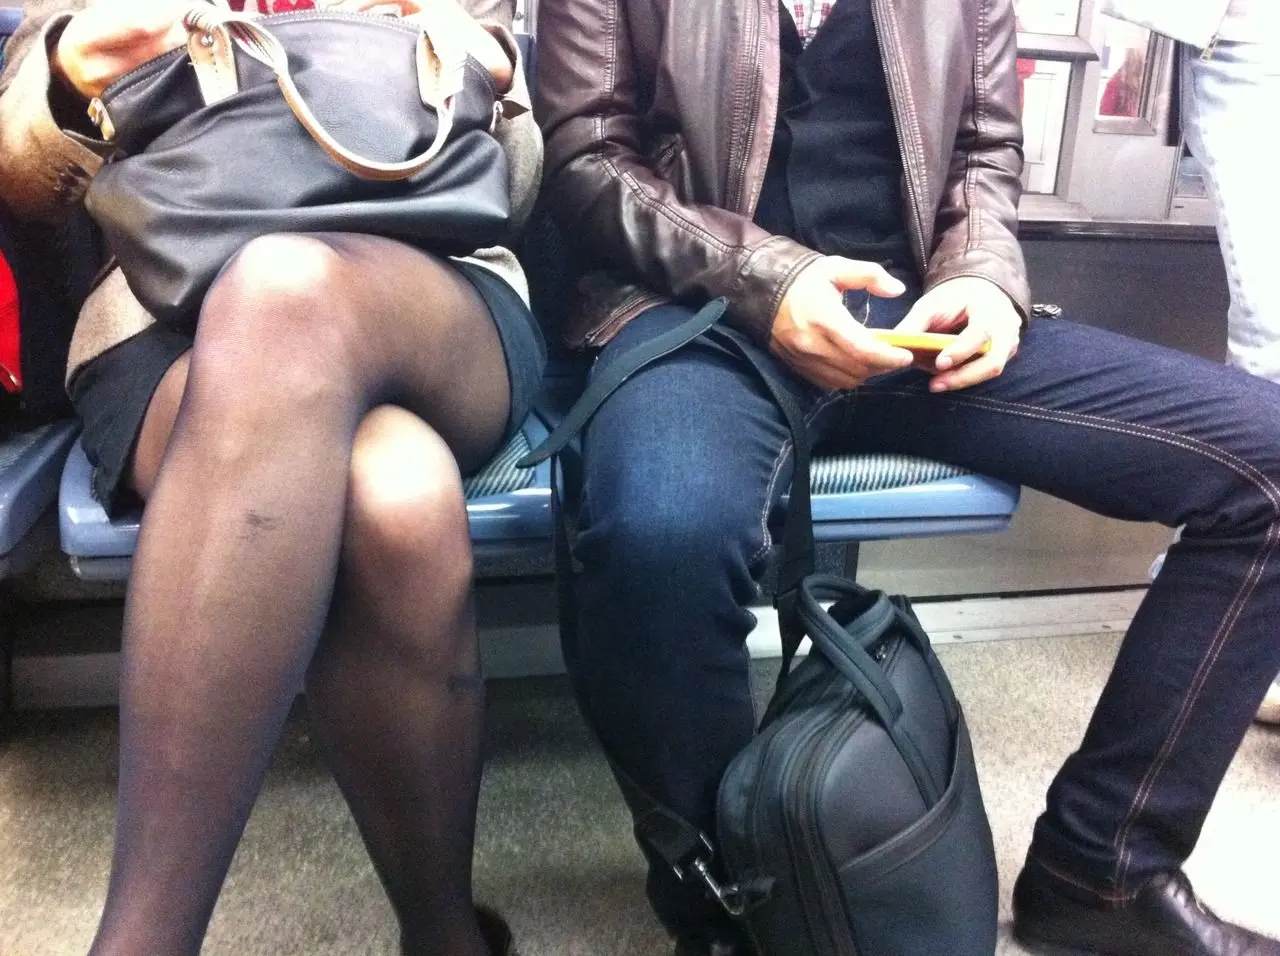 Un Tumblr s’élève contre la domination masculine dans le métro